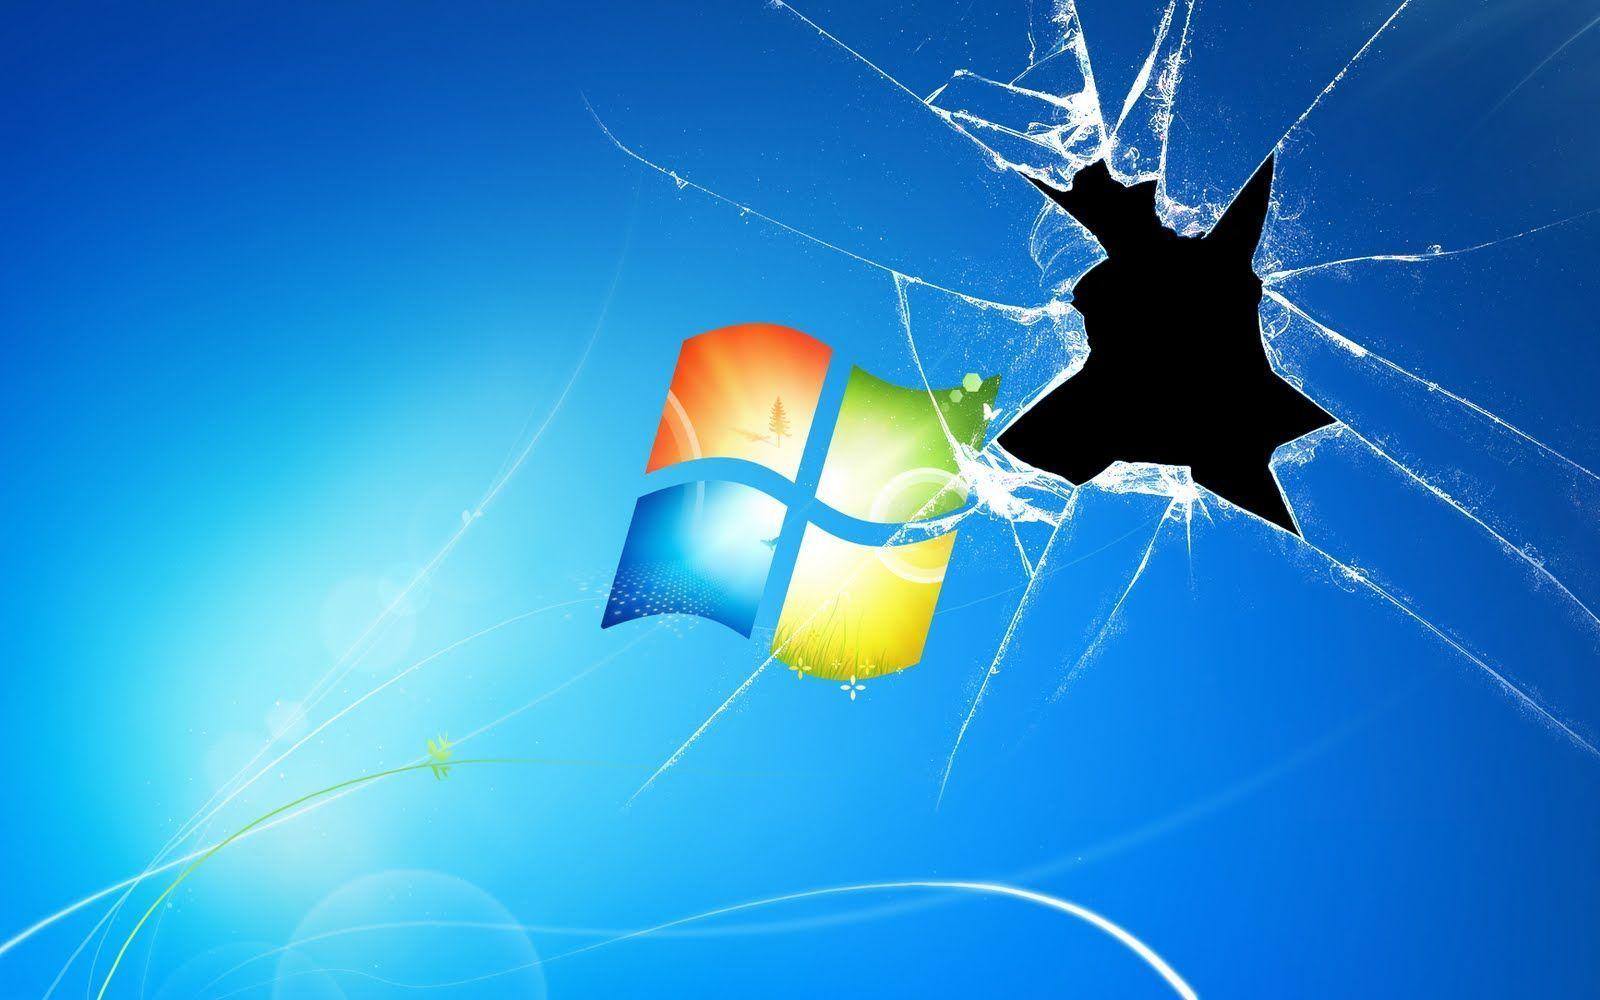 Windows 7 Wallpaper Broken Screen Download 26321 HD Picture. Top